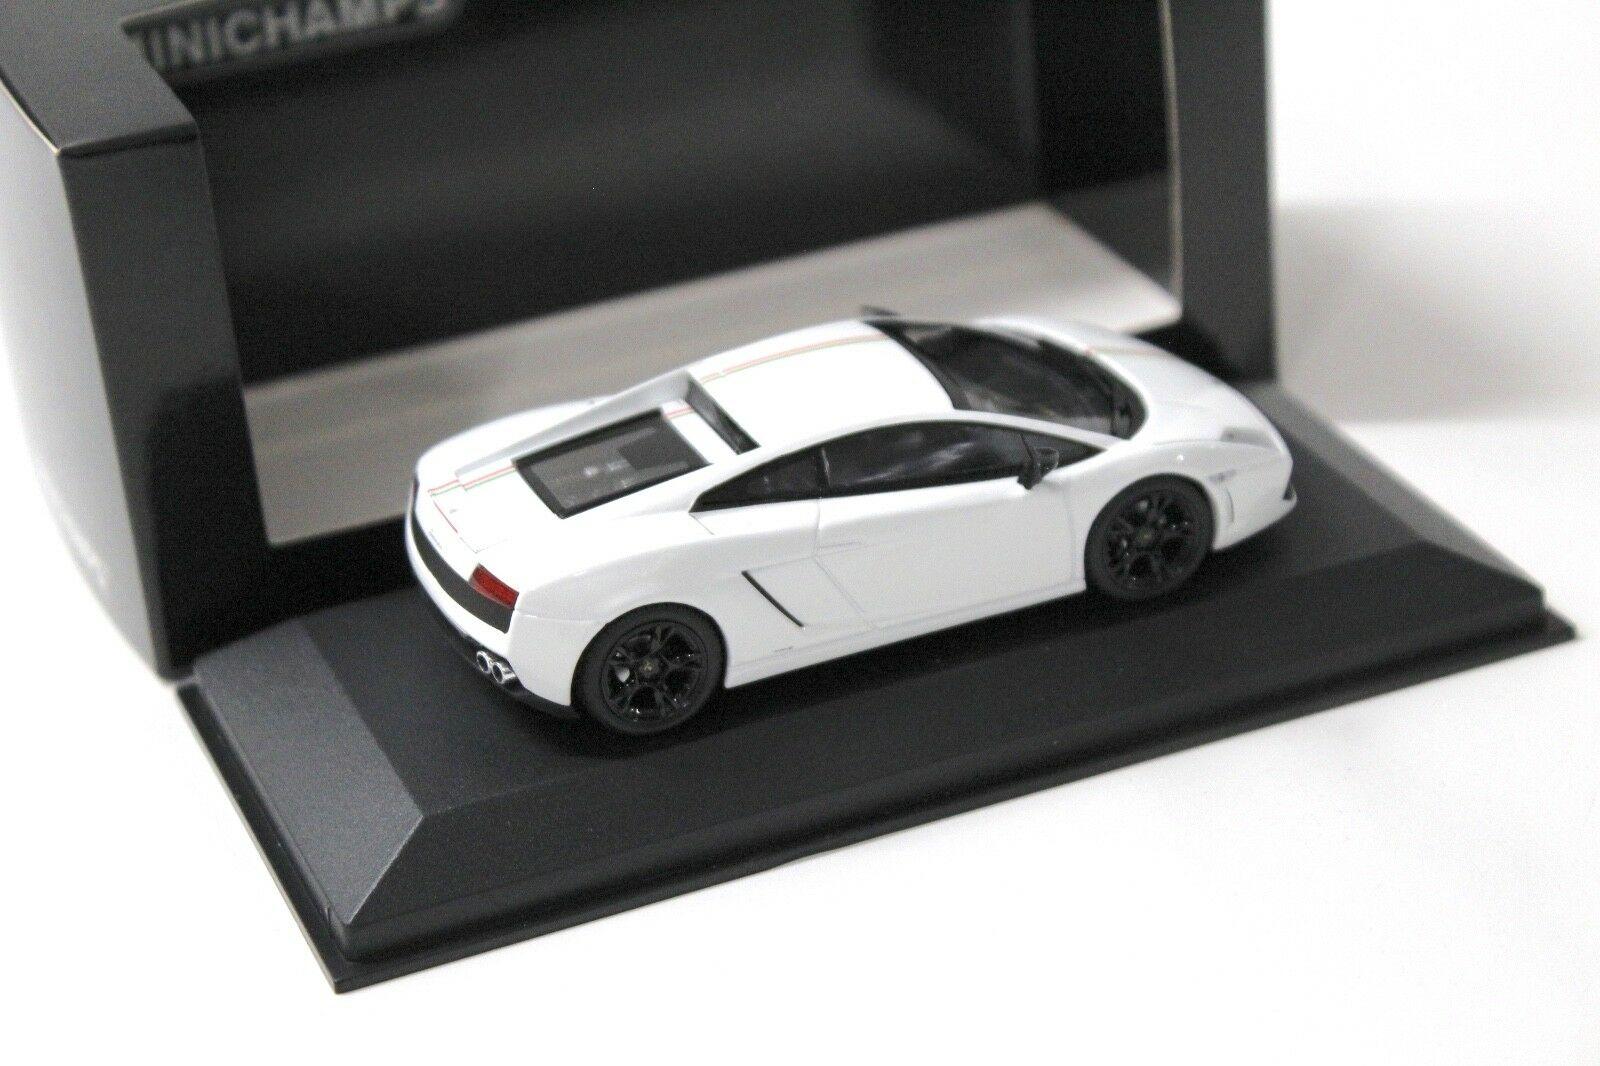 1:43 Minichamps Lamborghini Gallardo LP560-2 Tricolore white